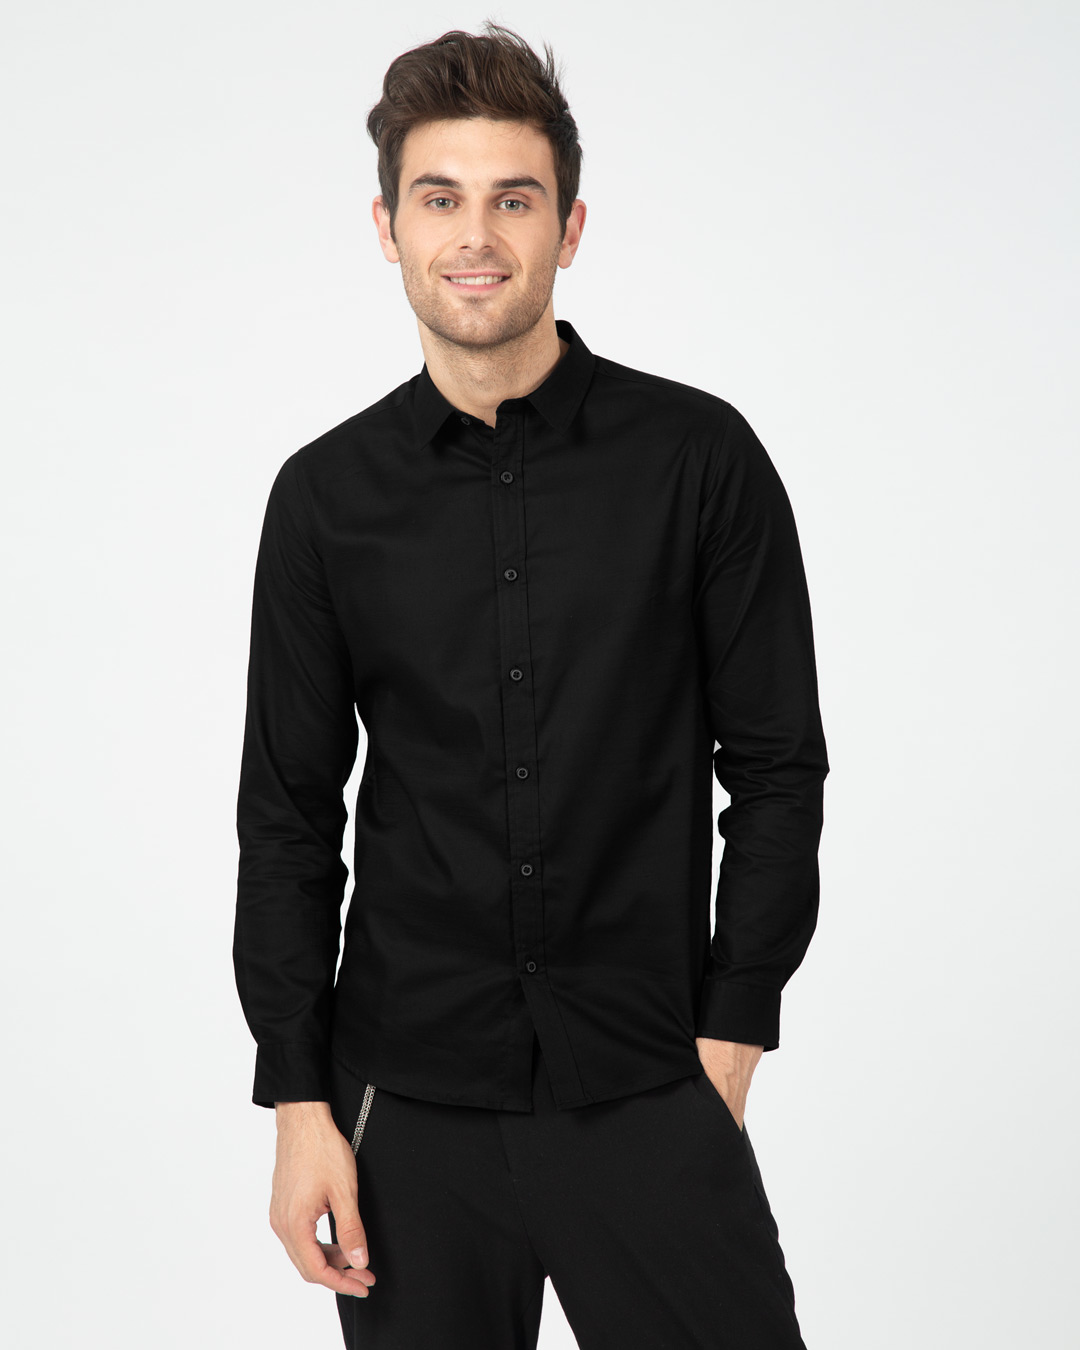 Buy Midnight Black Plain Full Sleeve Shirt For Men Online India ...